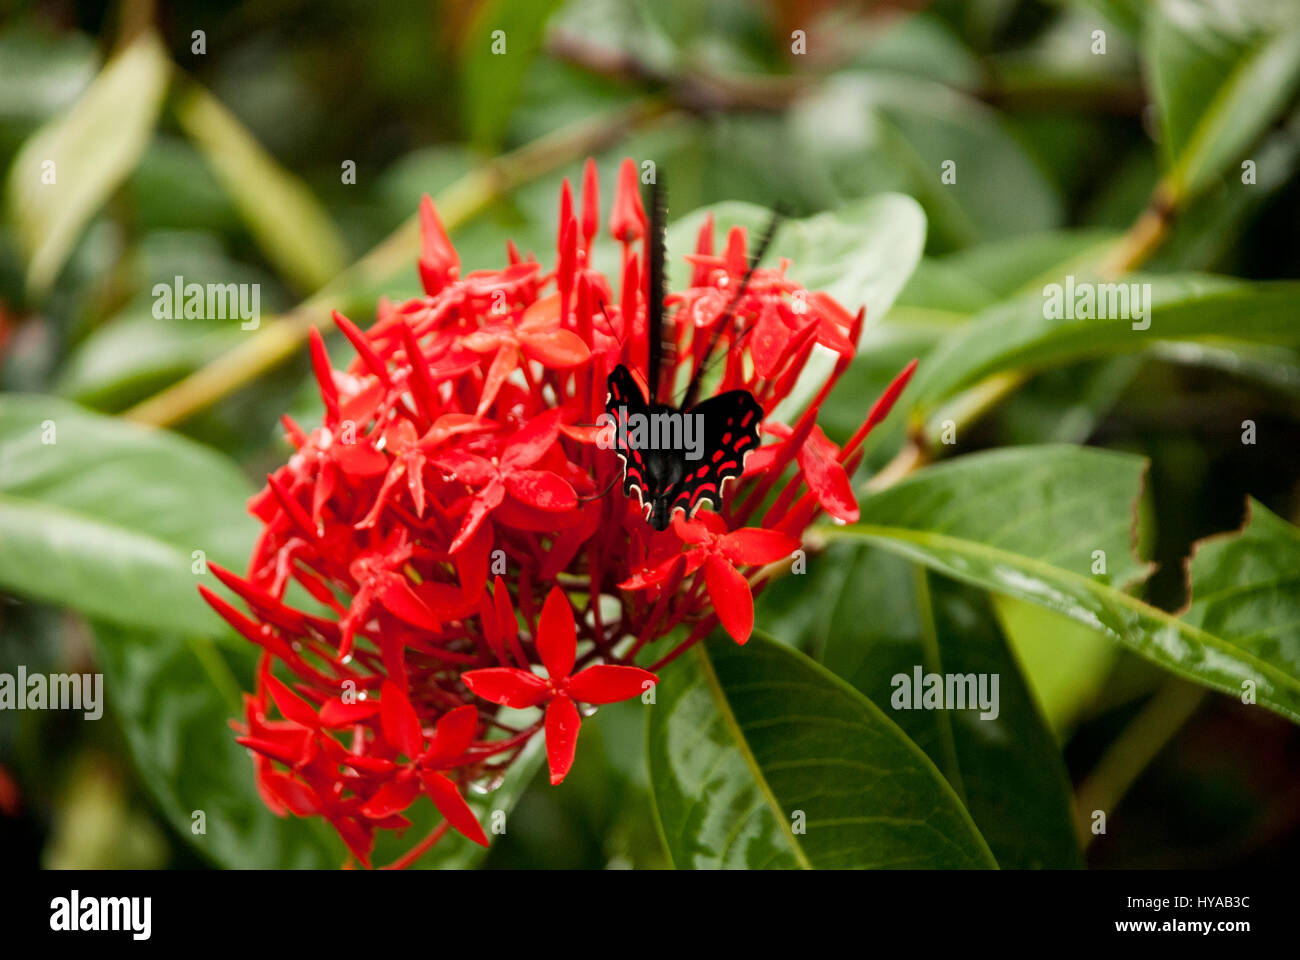 Butterfly Feeding On A Ixora Flower - West Indian Jasmine - Ixora Coccinea Stock Photo